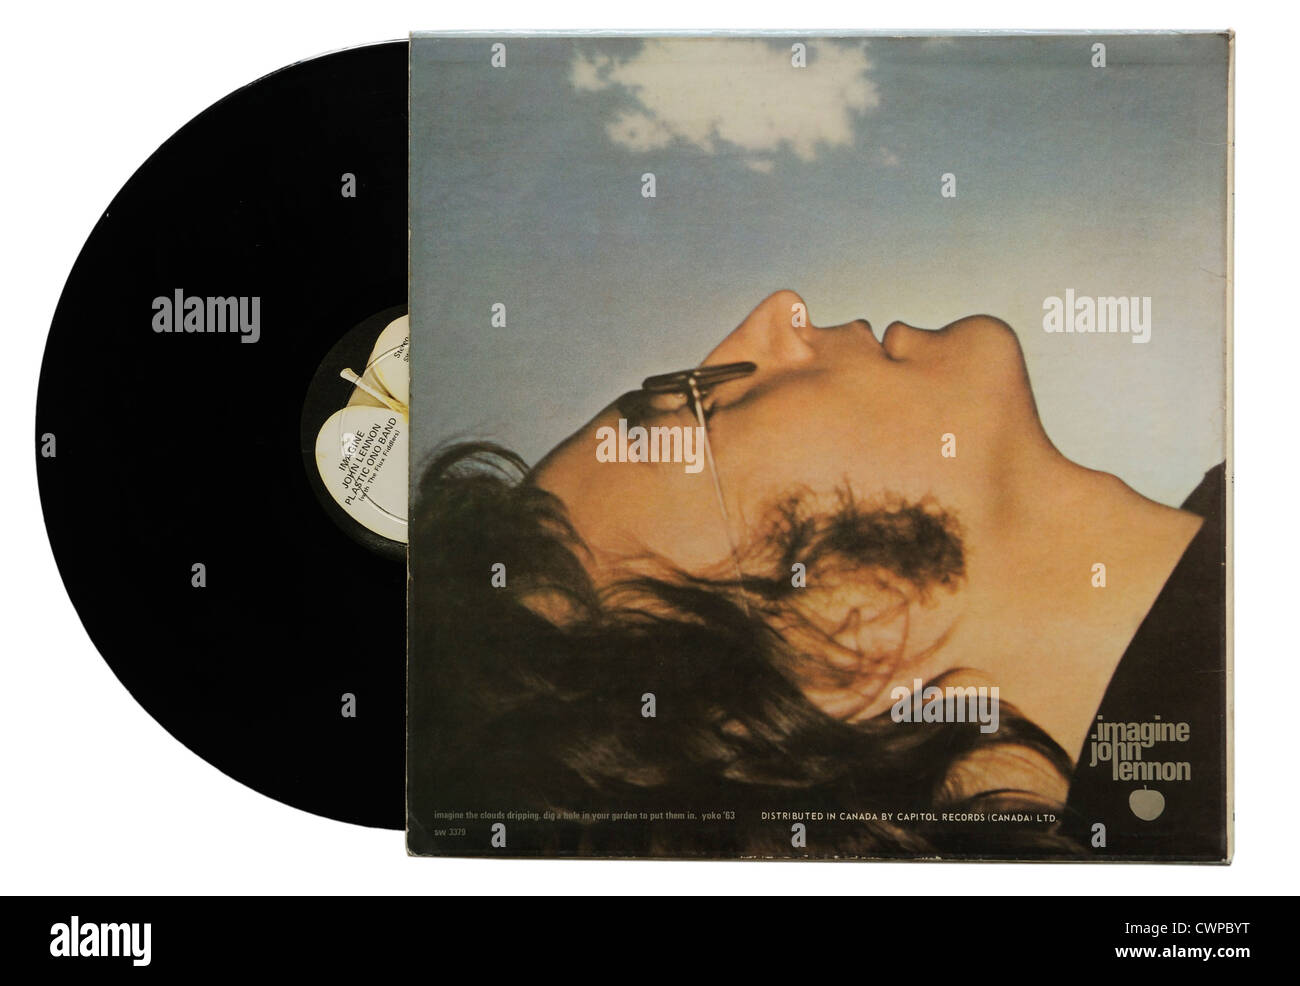 John Lennon vorstellen Album (Hinweis: Dies ist die Rückseite des Albums, finden Sie unter CWPBYF der Vorderseite) Stockfoto